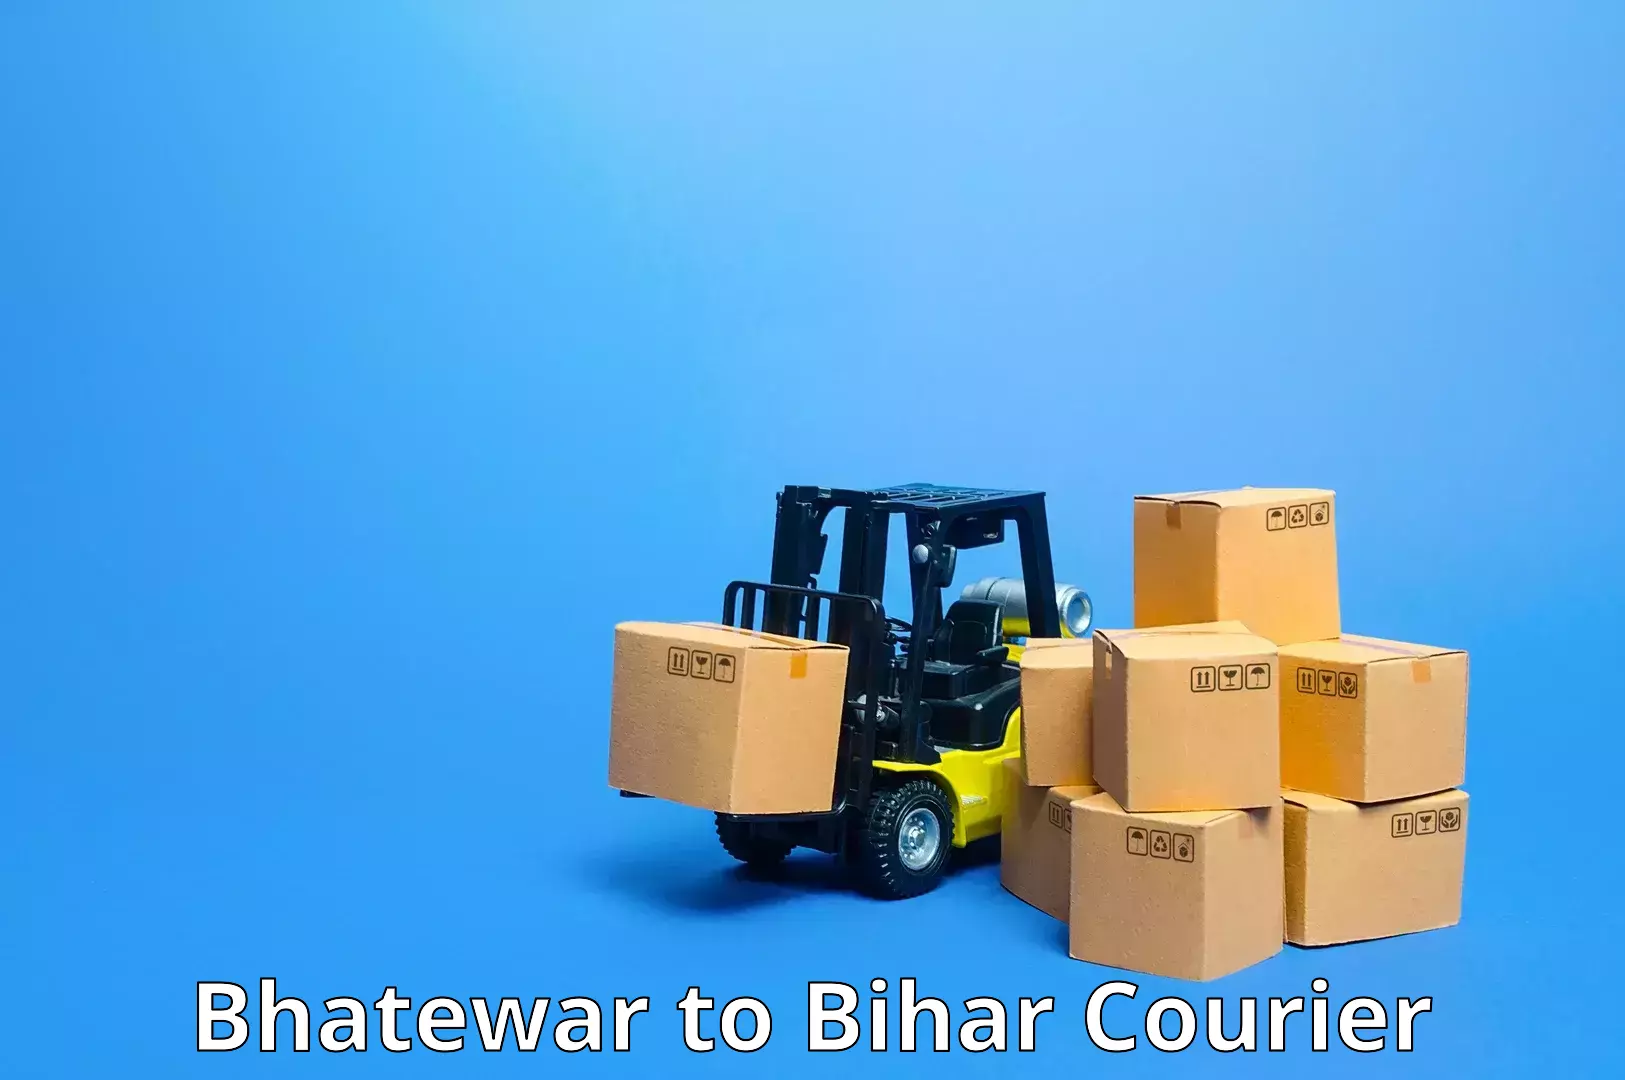 Courier service comparison Bhatewar to Bharwara